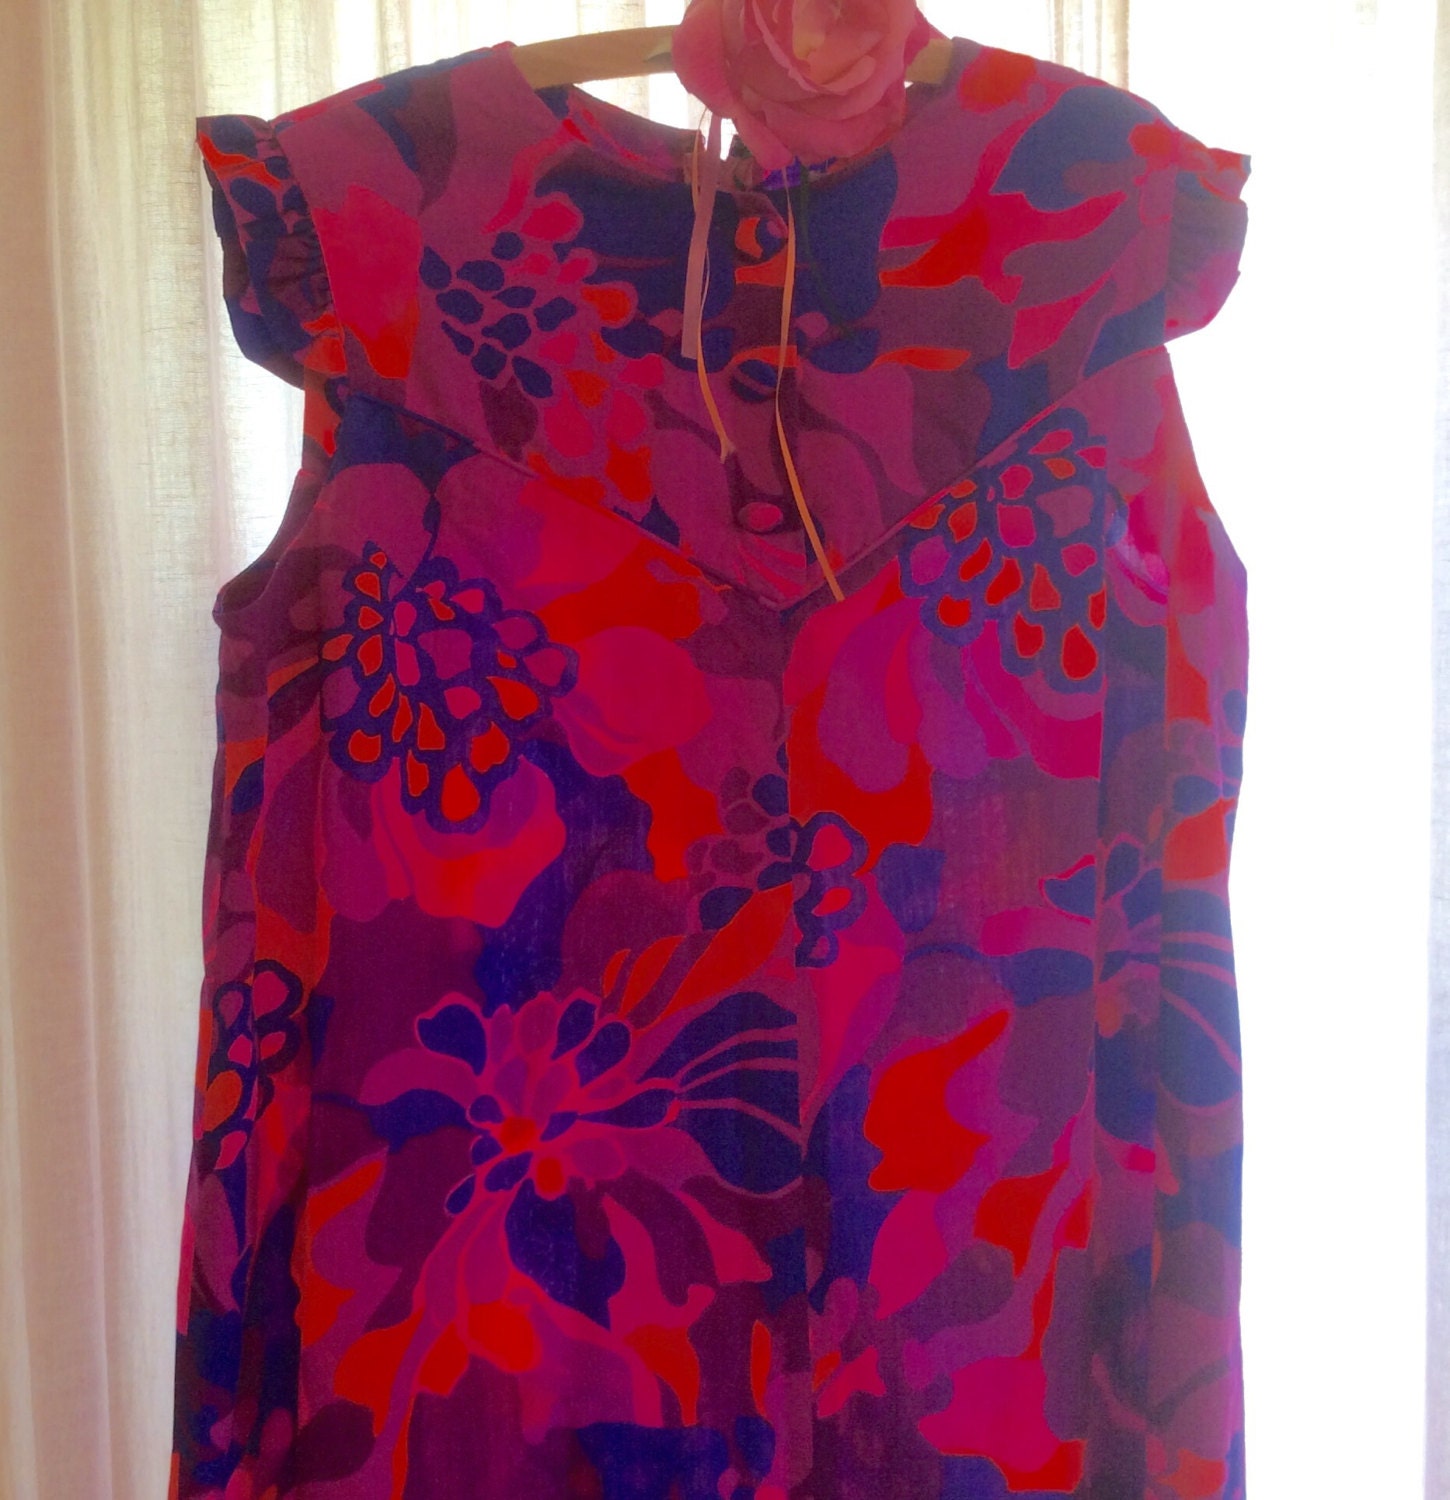 Moo moo dress Hawaiian Dress Hawaiian fabric medium size